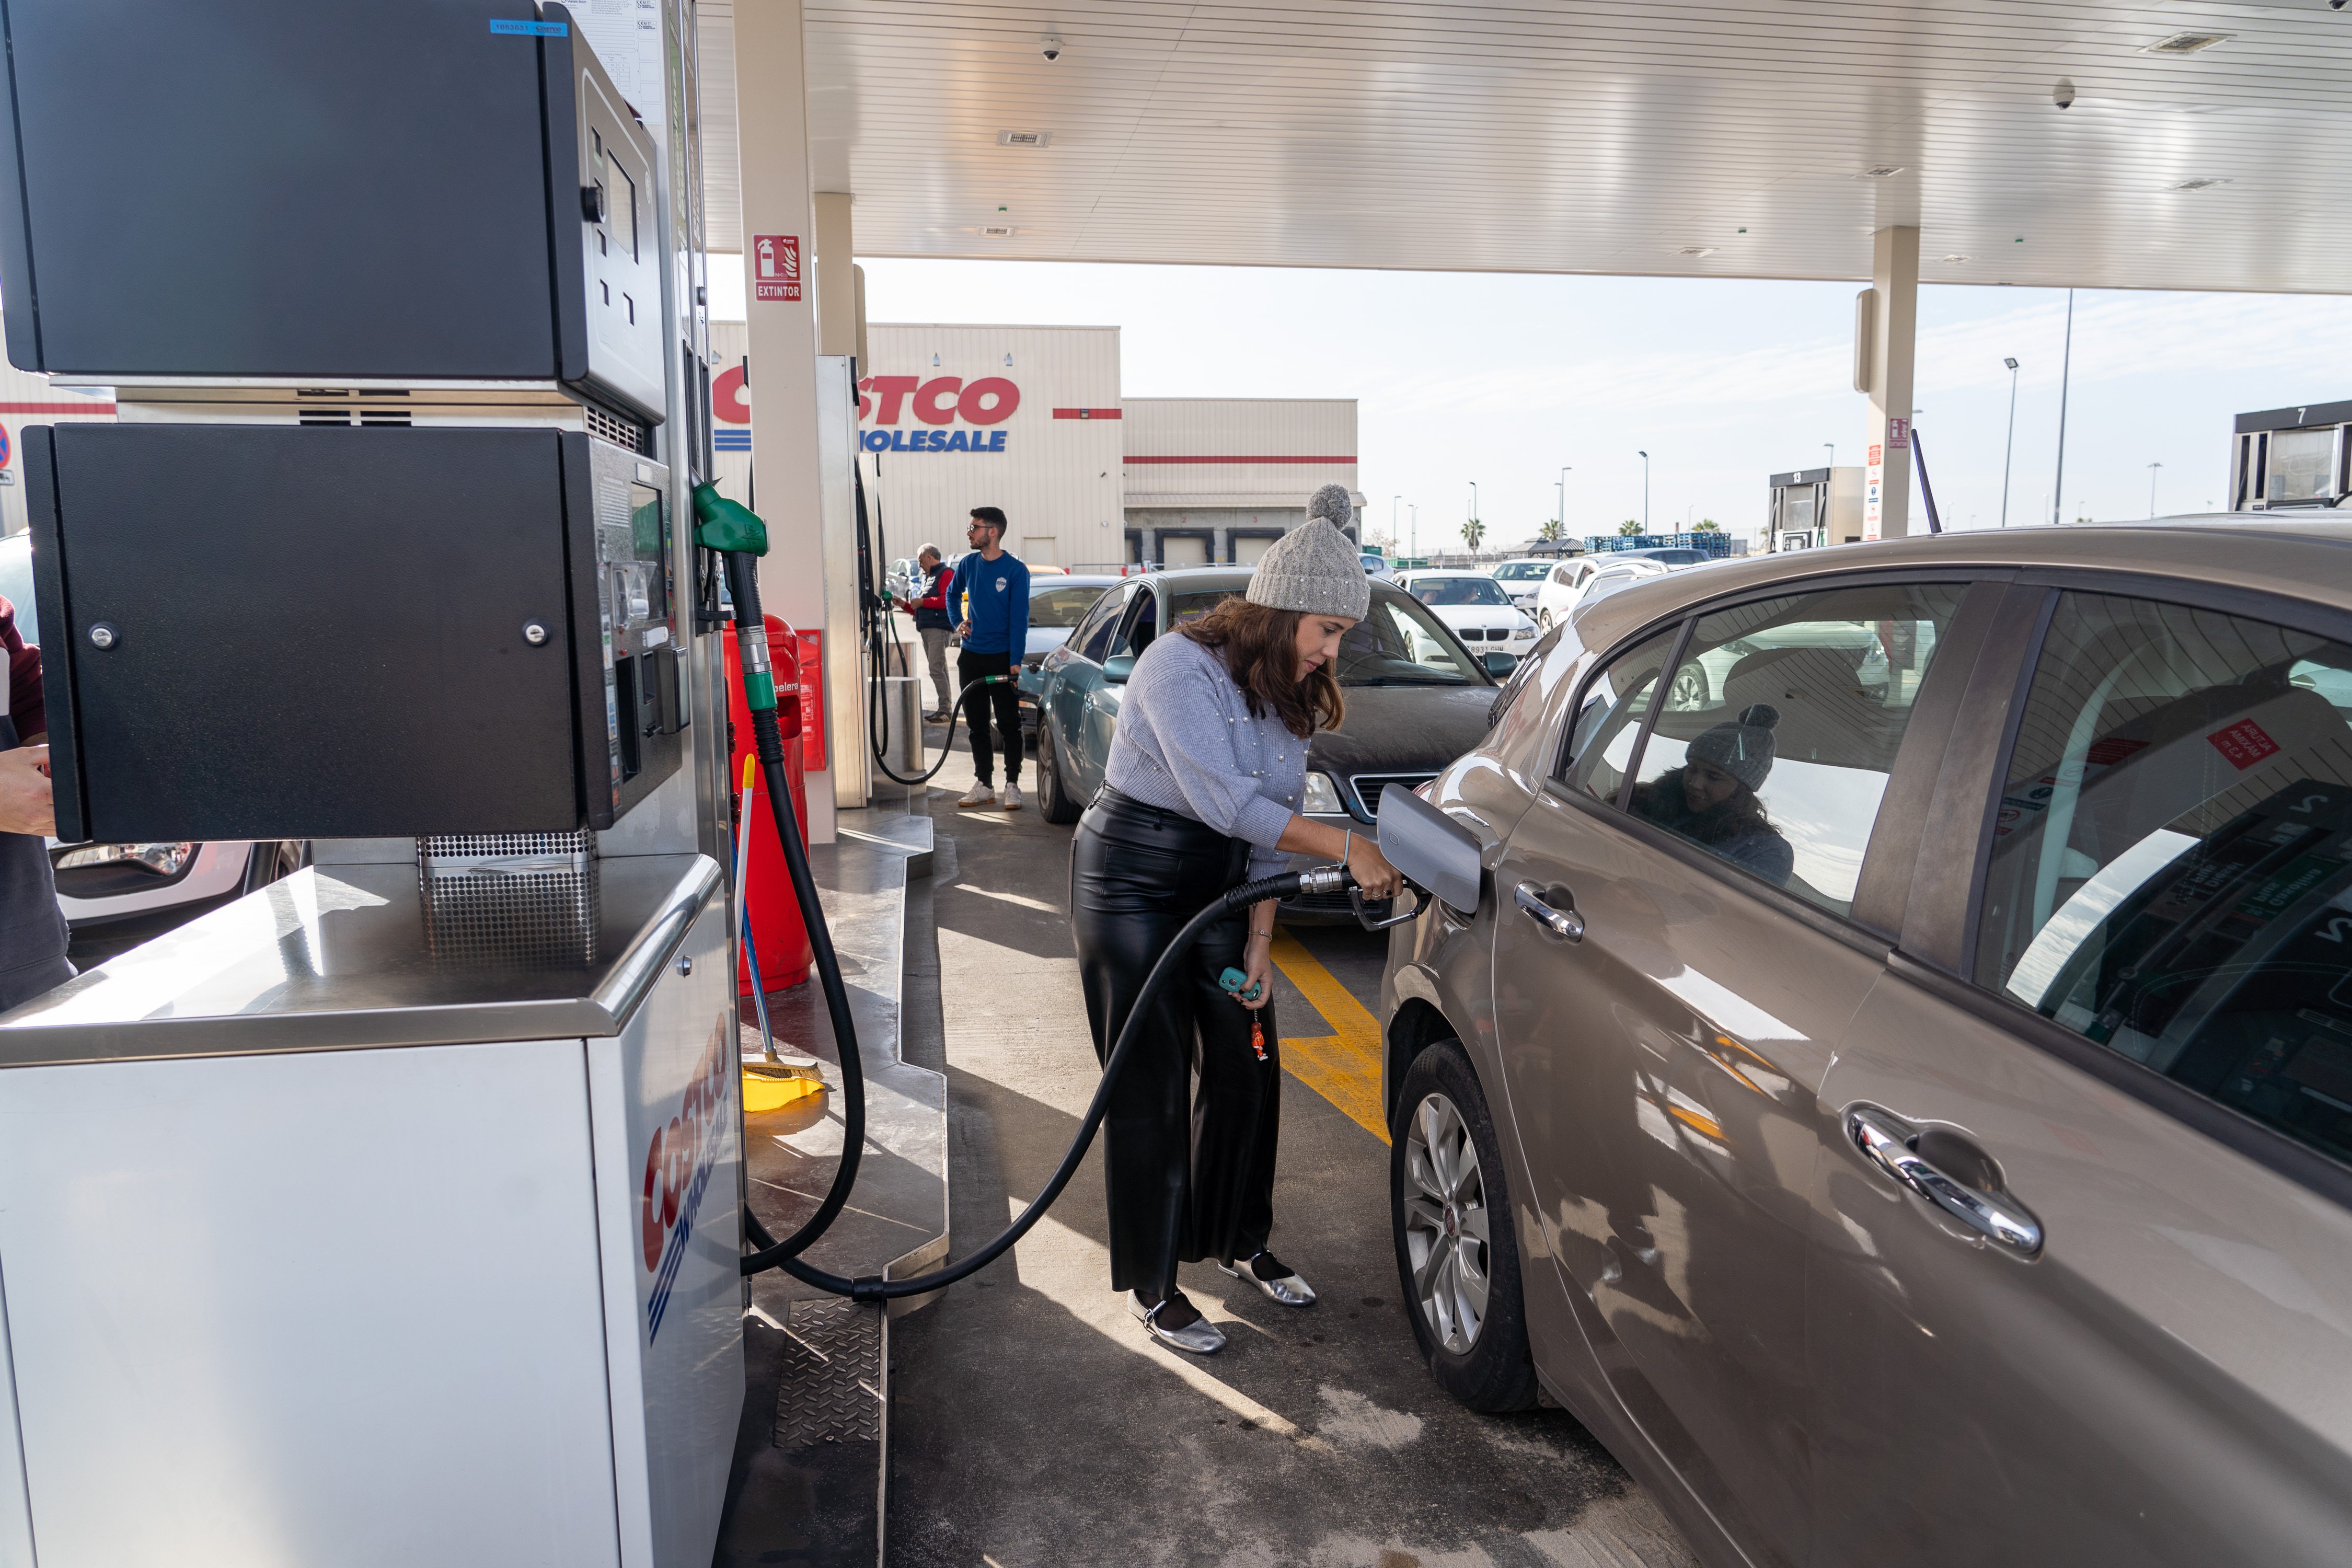 Quant pot arribar a costar un litre de carburant sintètic en una gasolinera?